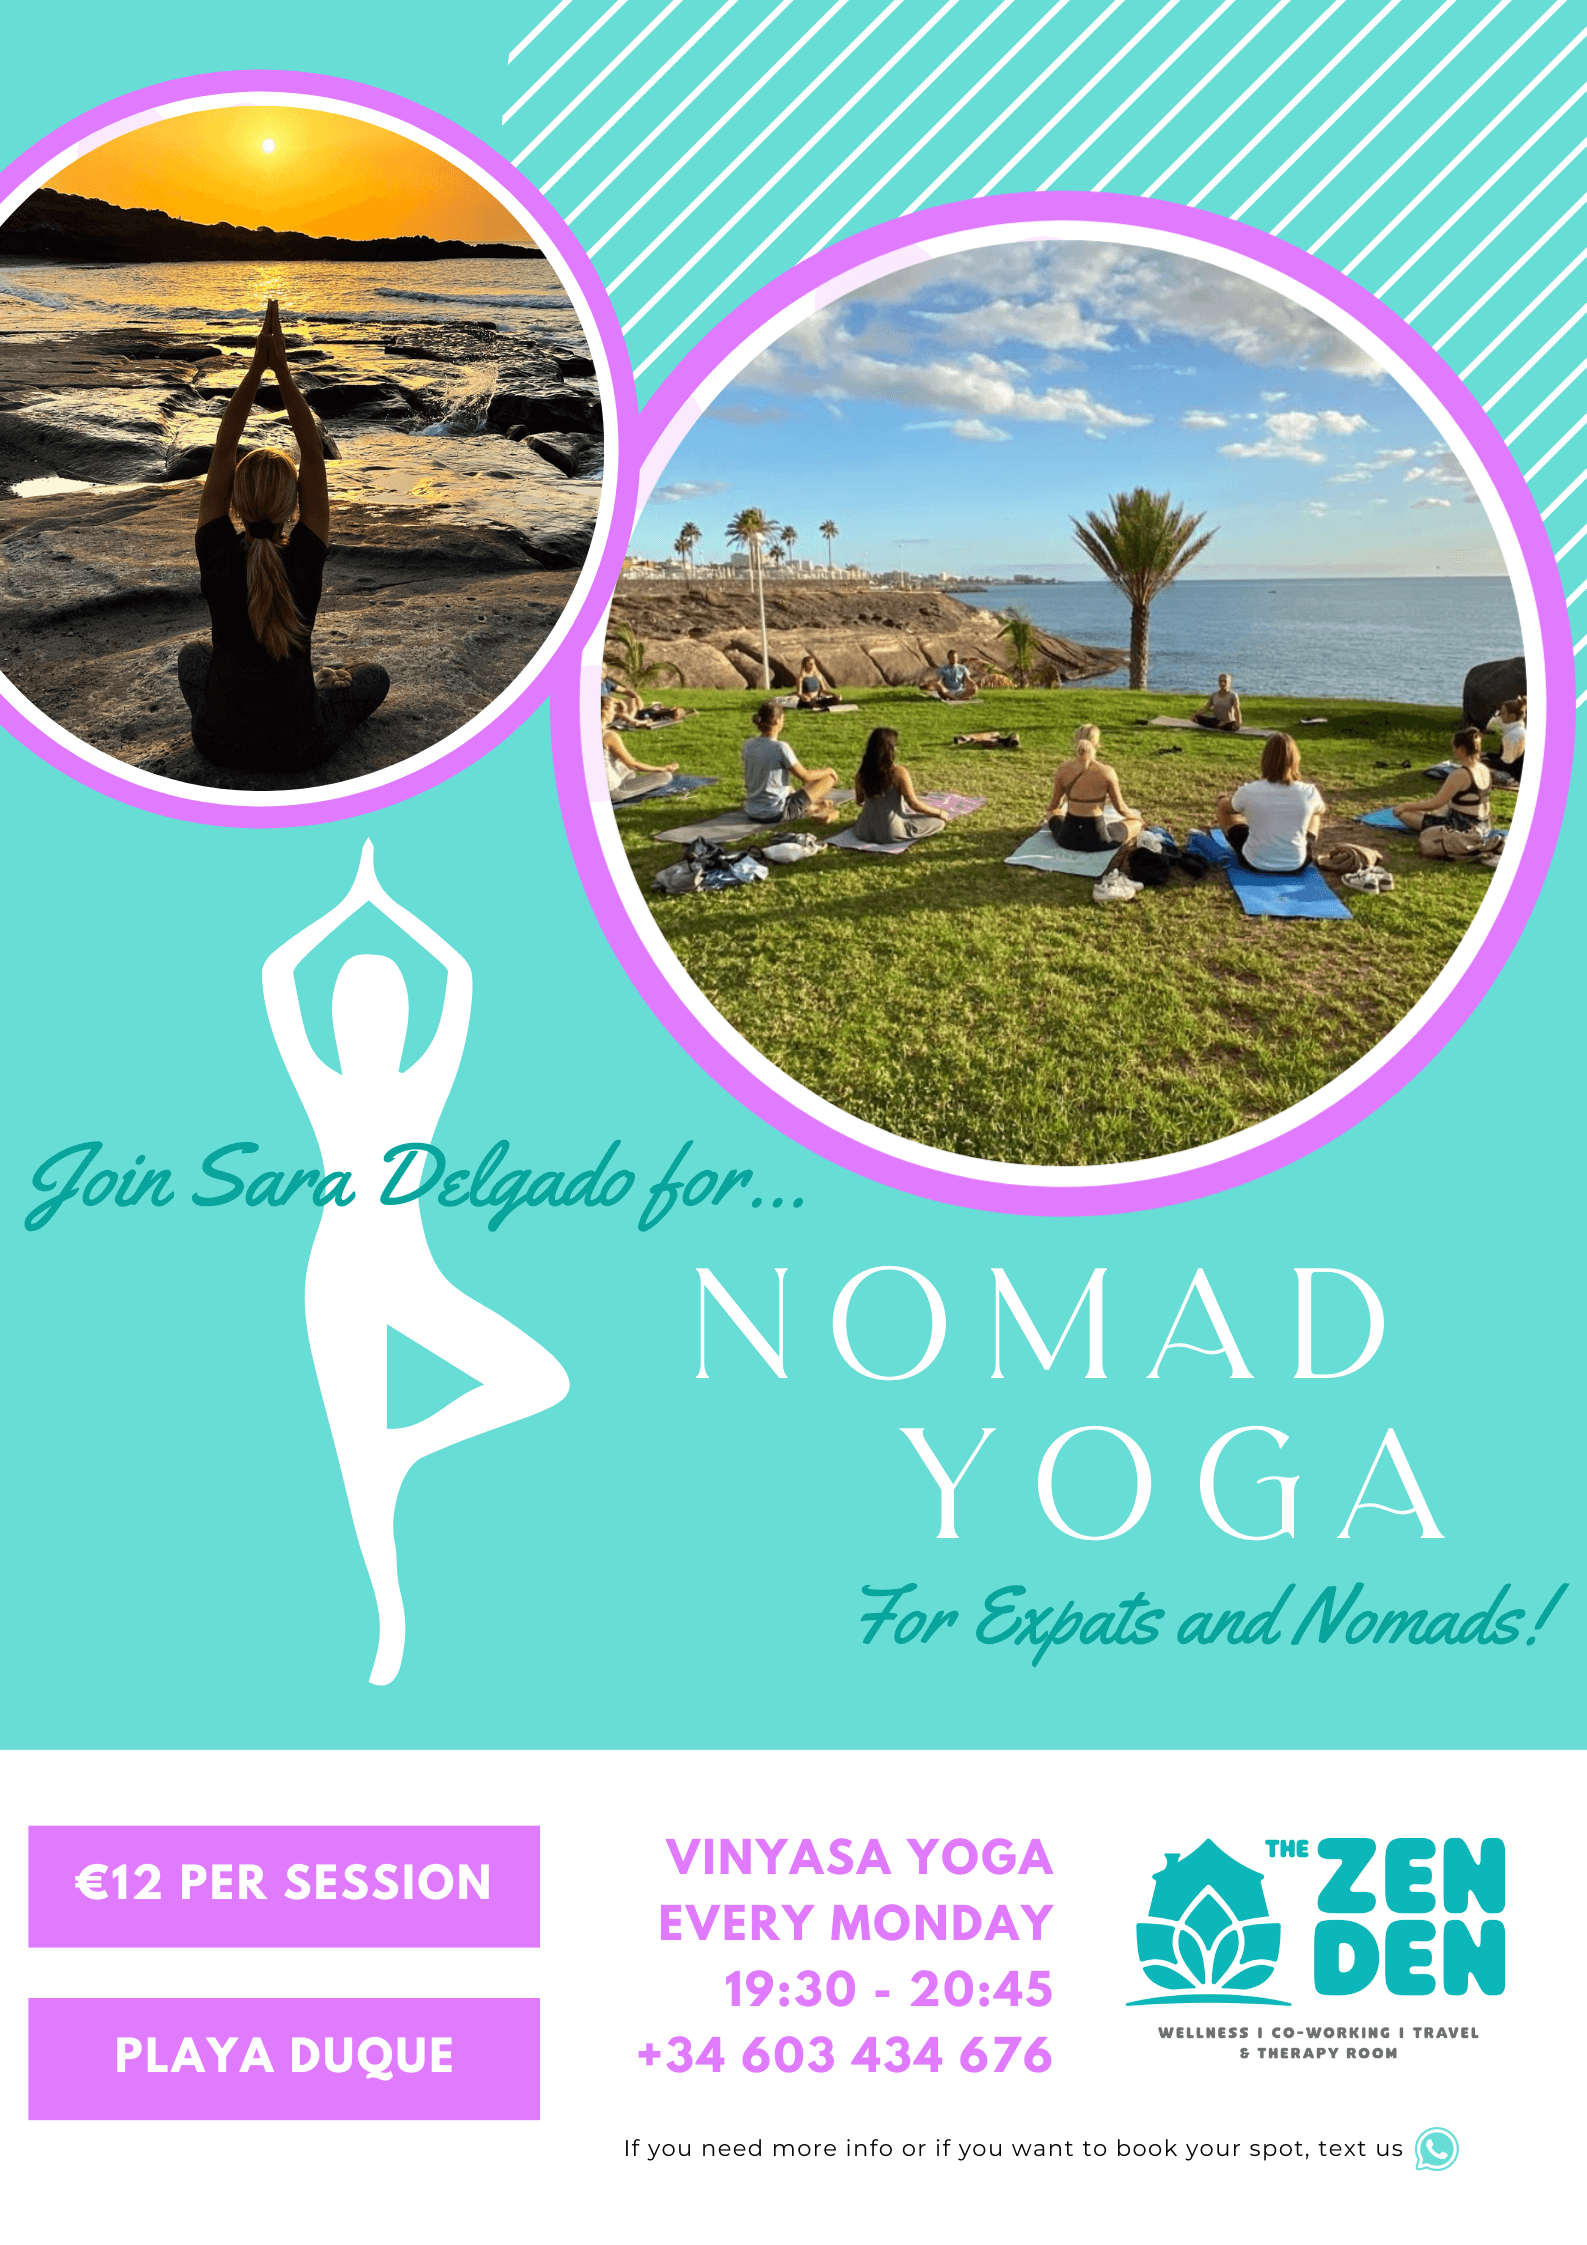 Nomad Yoga